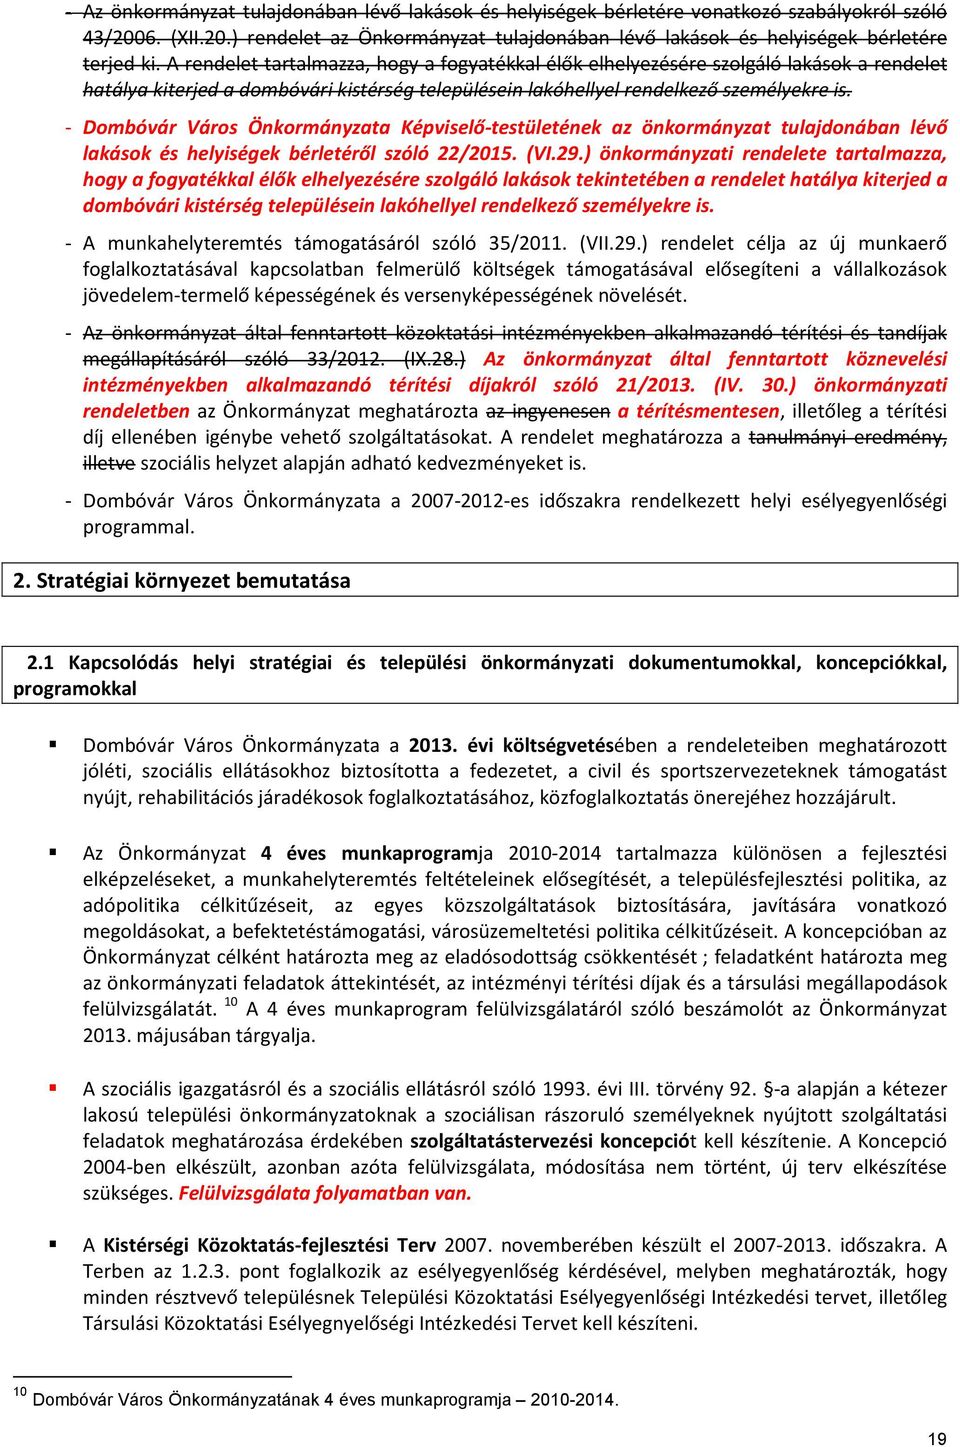 - Dombóvár Város Önkormányzata Képviselő-testületének az önkormányzat tulajdonában lévő lakások és helyiségek bérletéről szóló 22/2015. (VI.29.